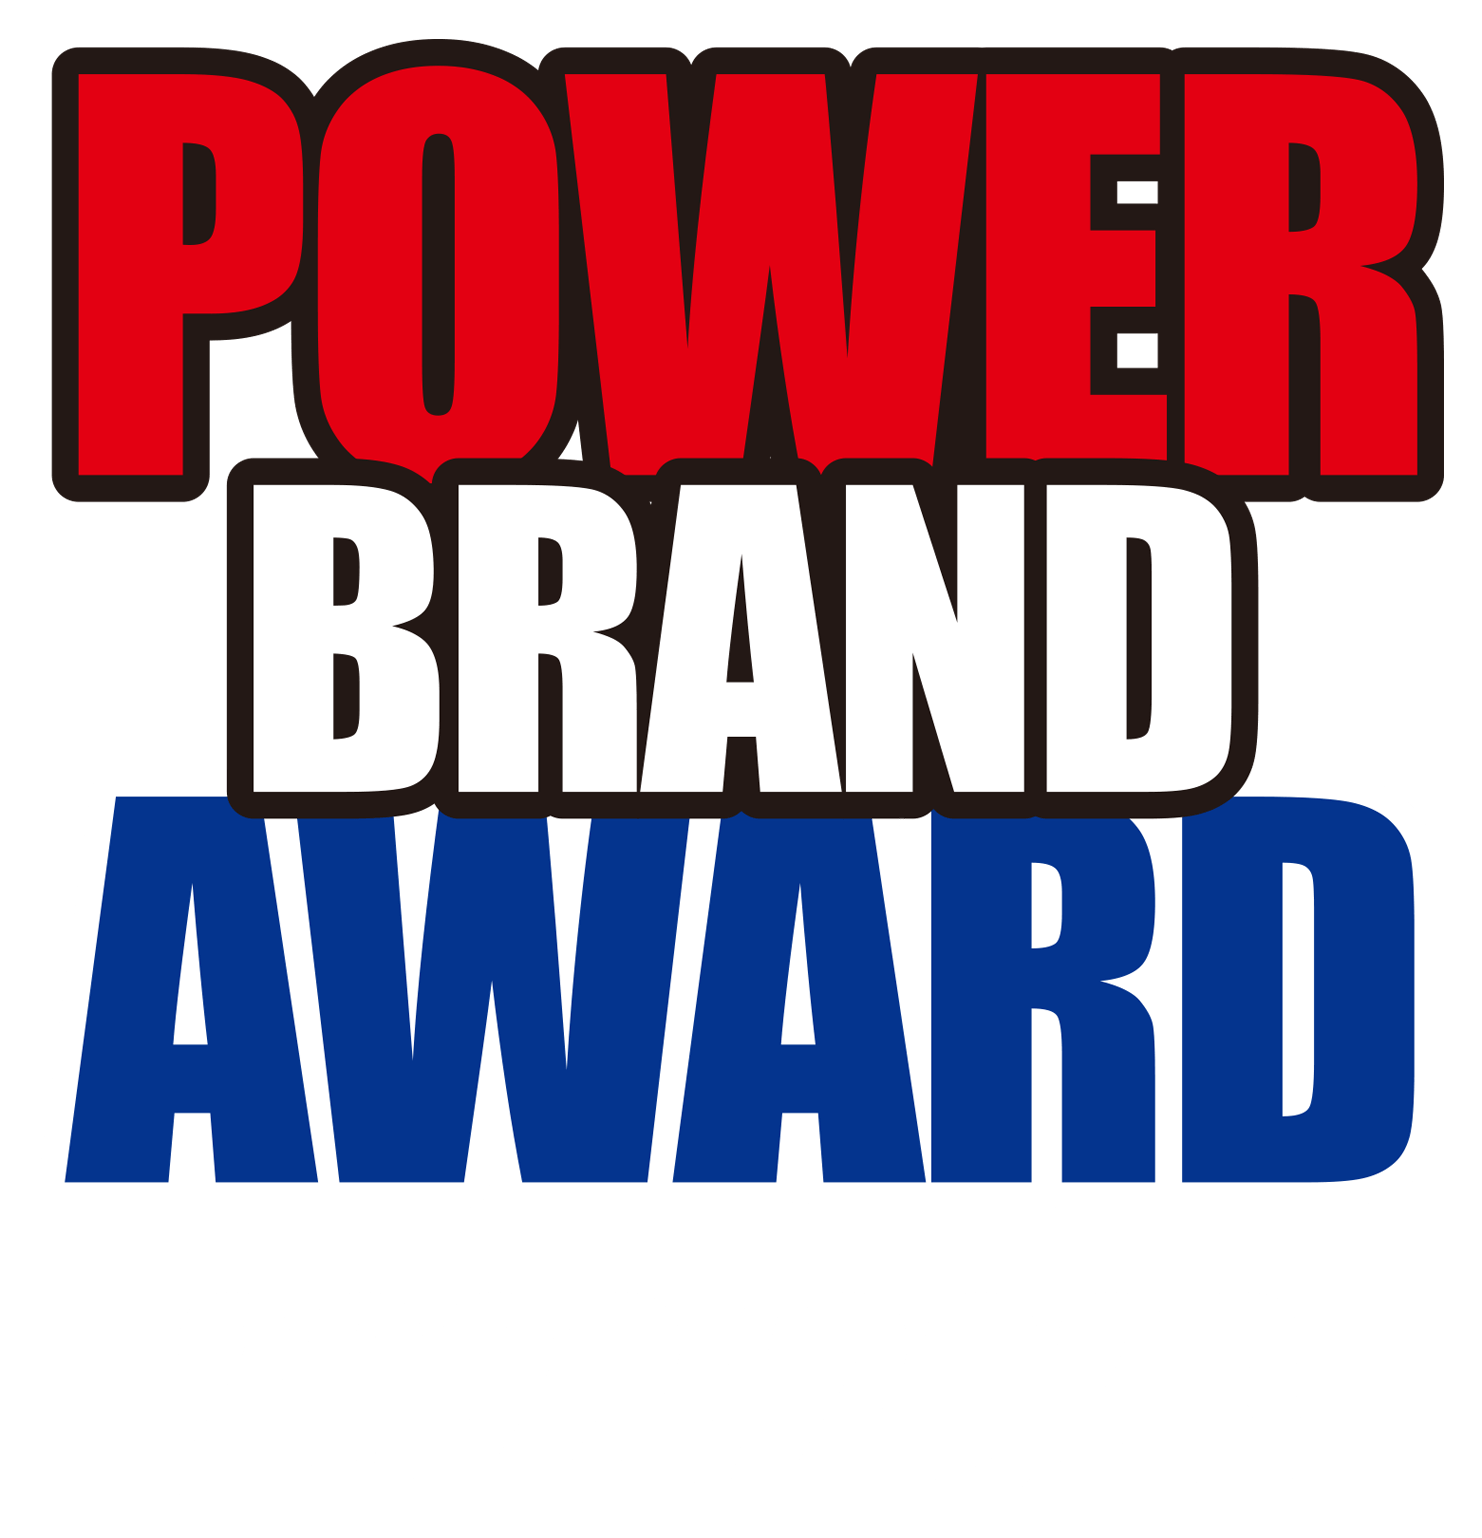 Special Power Brand 2022/2023<br/>“SME Power Brand 2022/2023”